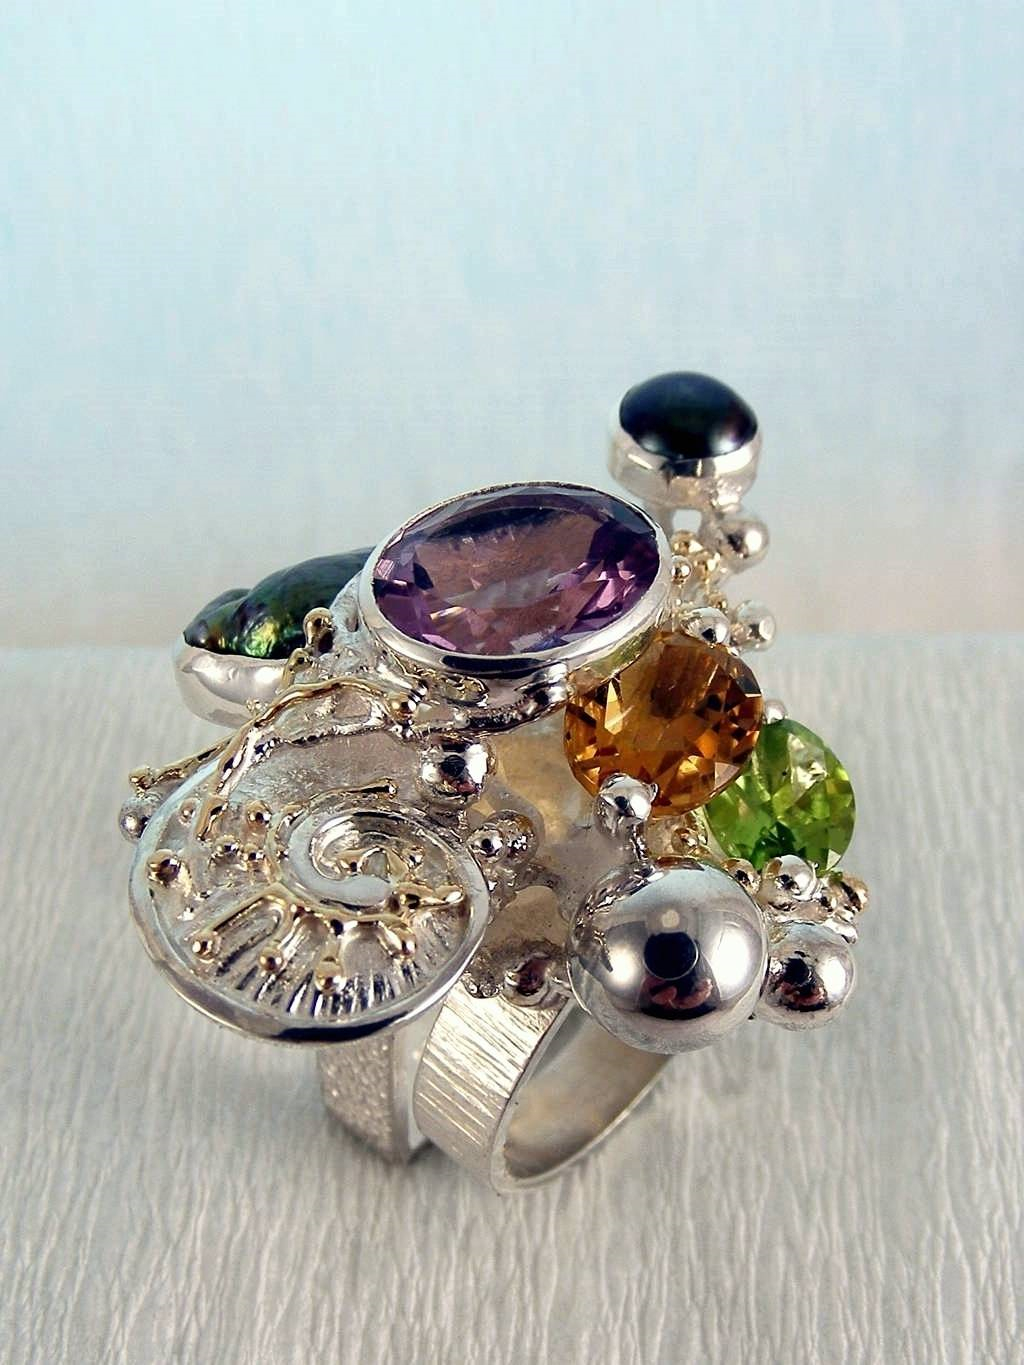 módní šperky, modní styl, sběratelská položka, šperky vyrobené ze stříbra a zlata, olivín, ametyst, granát, citrín, perla, Gregory Pyra Piro prstýnek čís. 1565